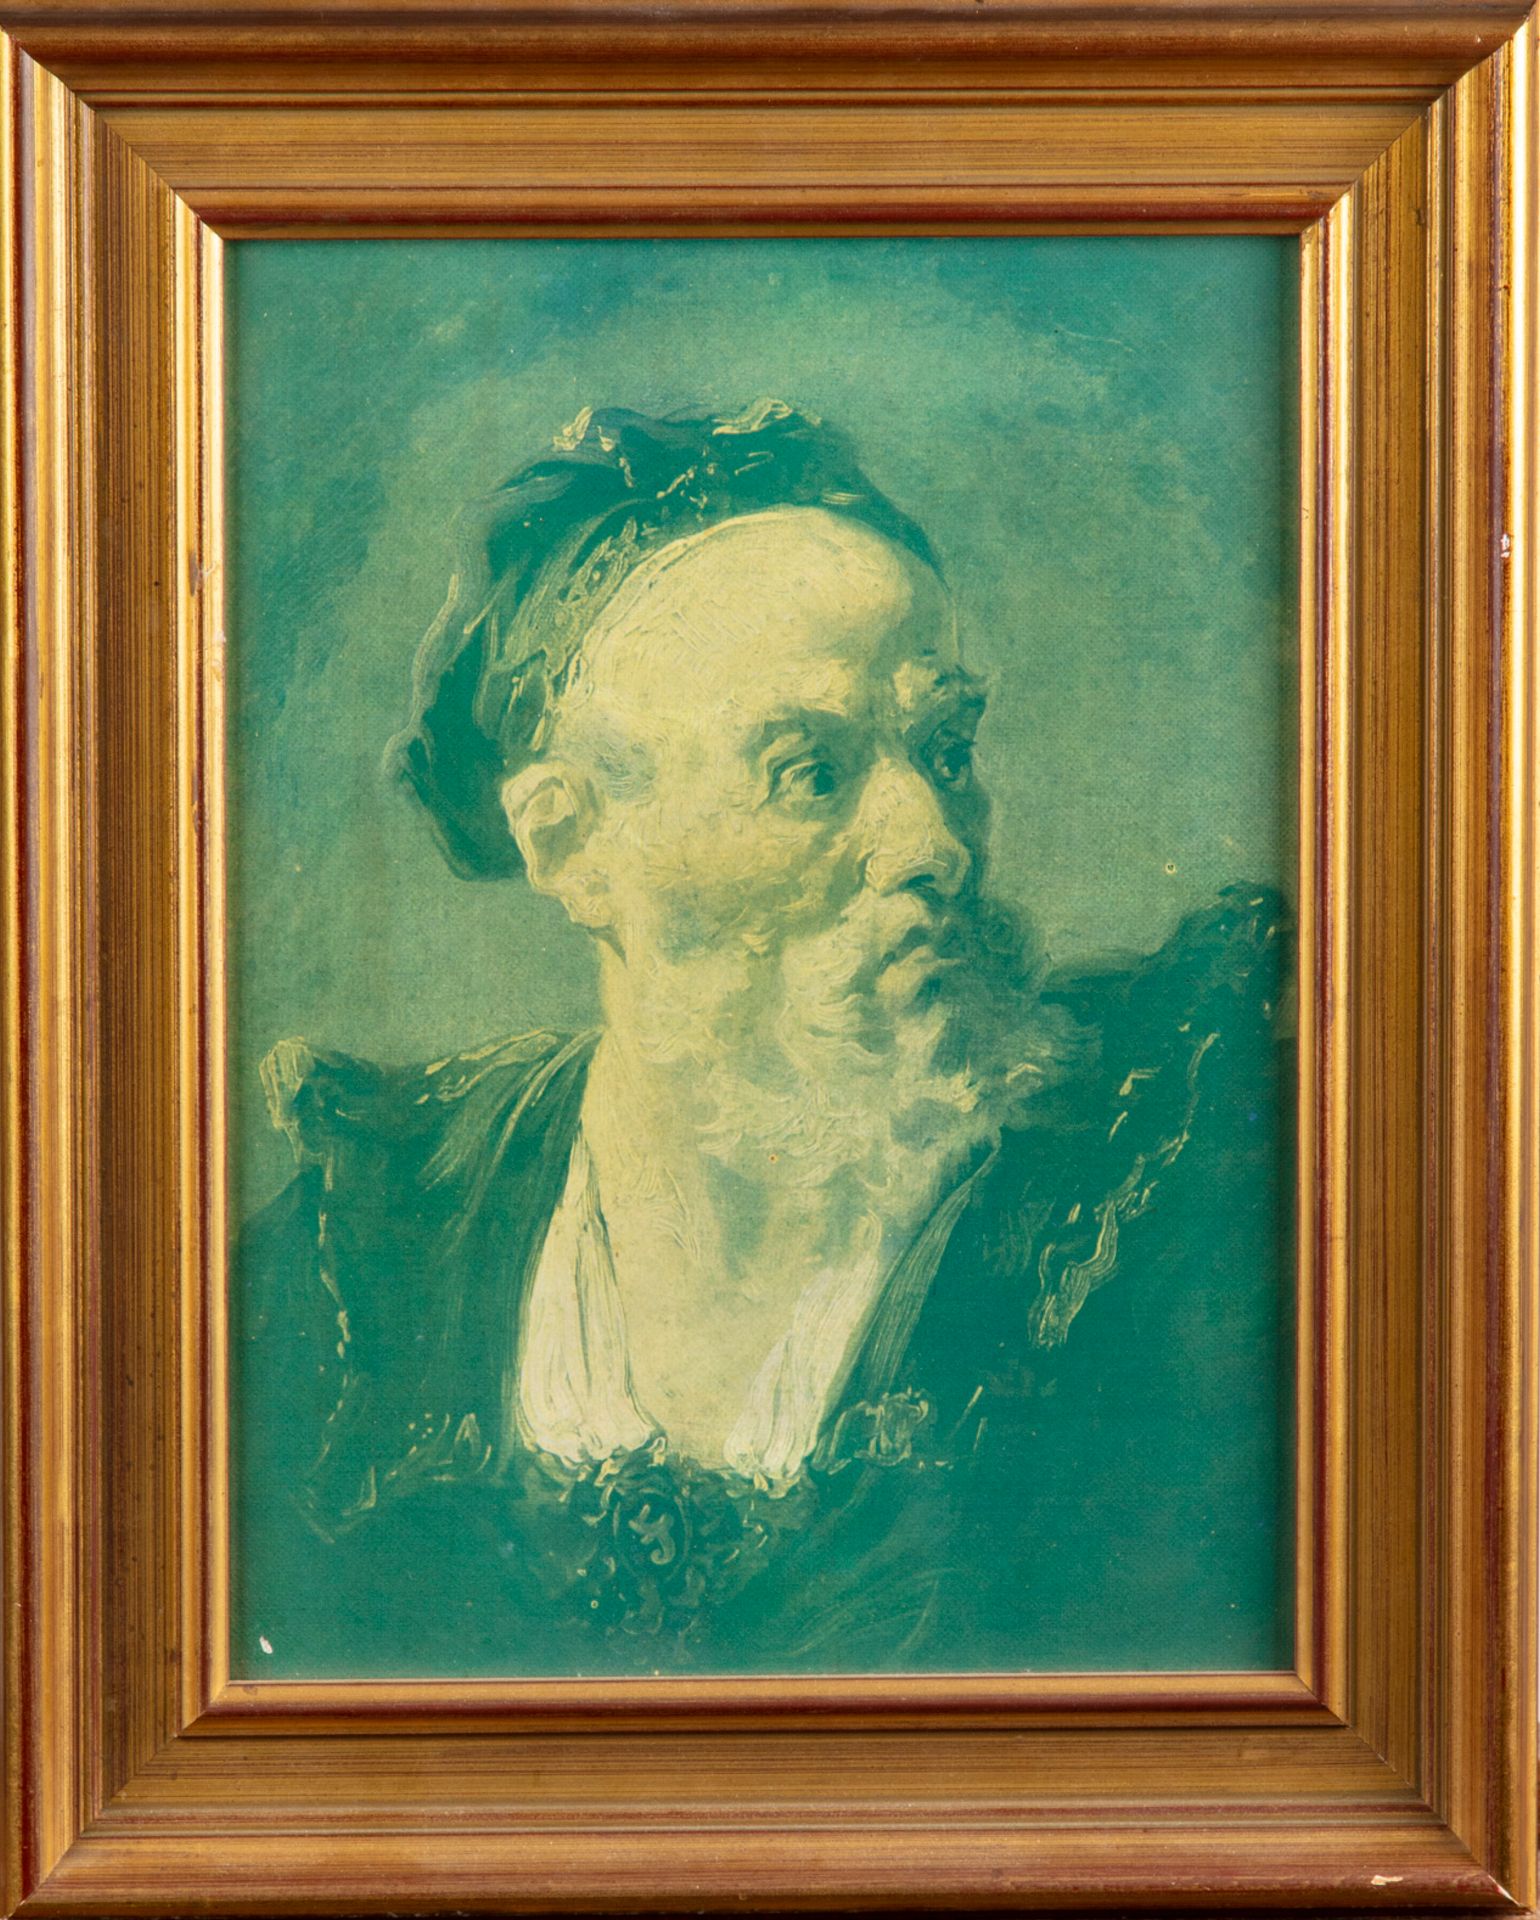 Null Retrato de un hombre

Cromolitografía

27 x 20 cm